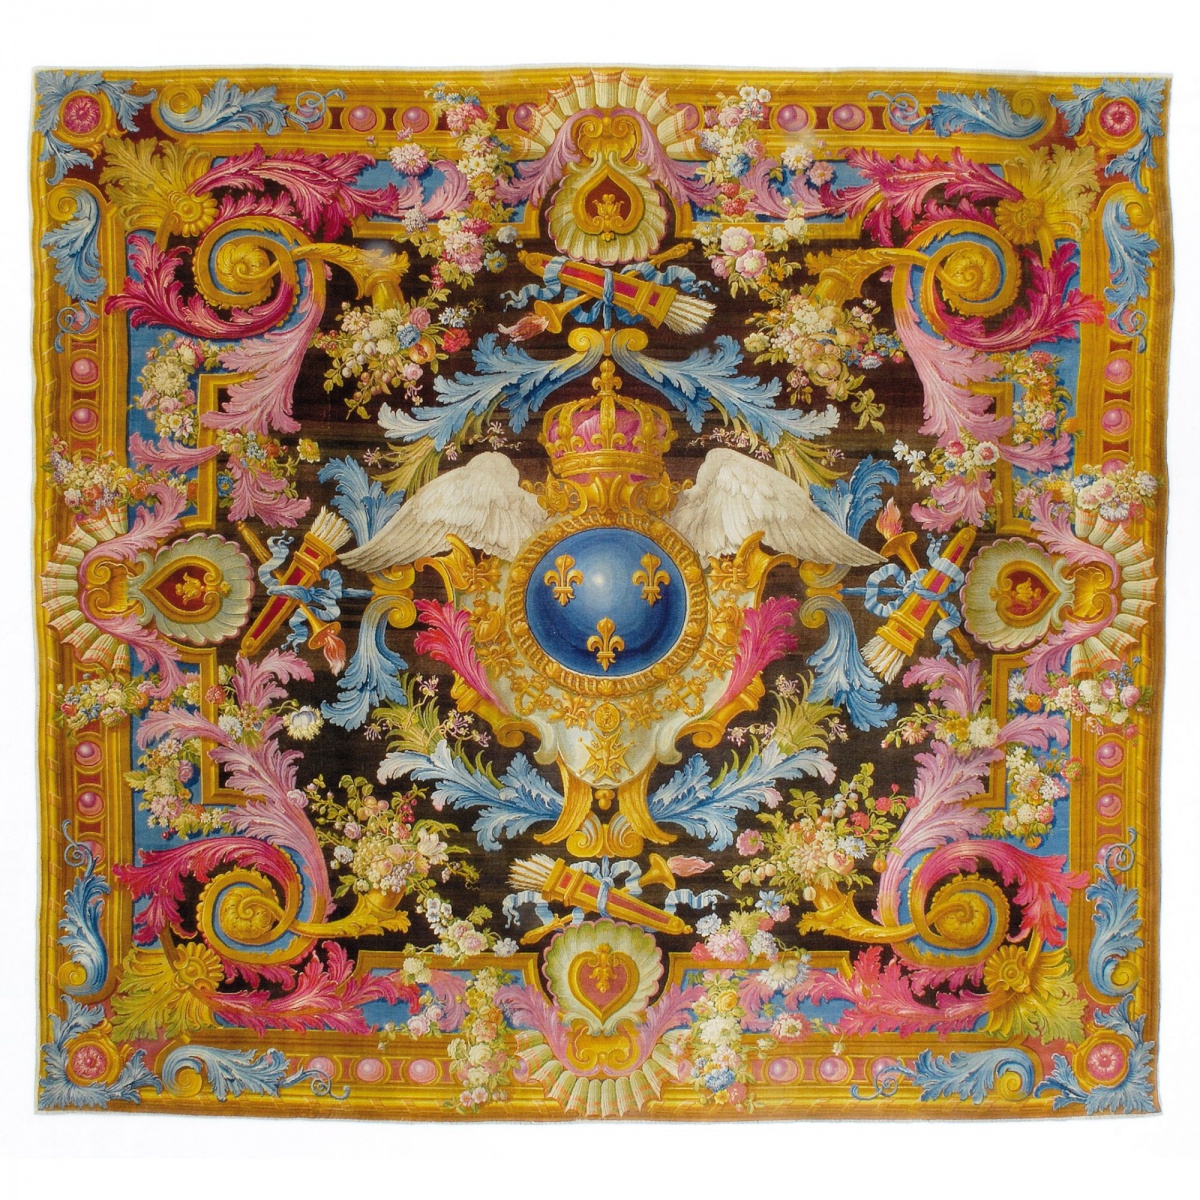 18世纪,由法国皇家地毯工厂生产,为皇室住宅装饰所用,一共三张,图案